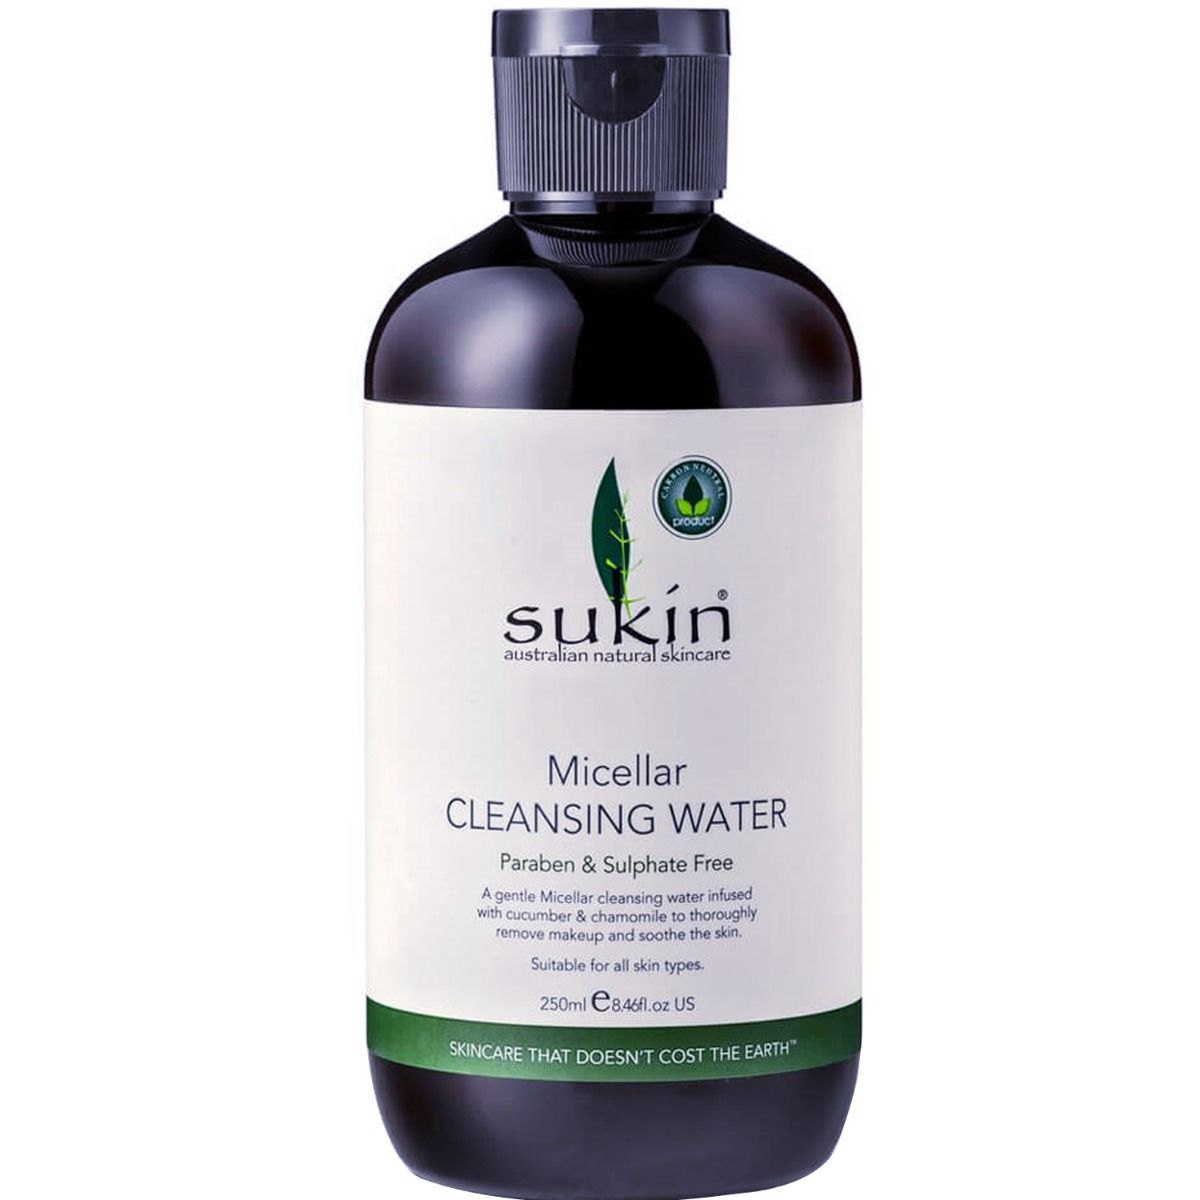 Buy Sukin Micellar Cleansing Water, 250 ml Online